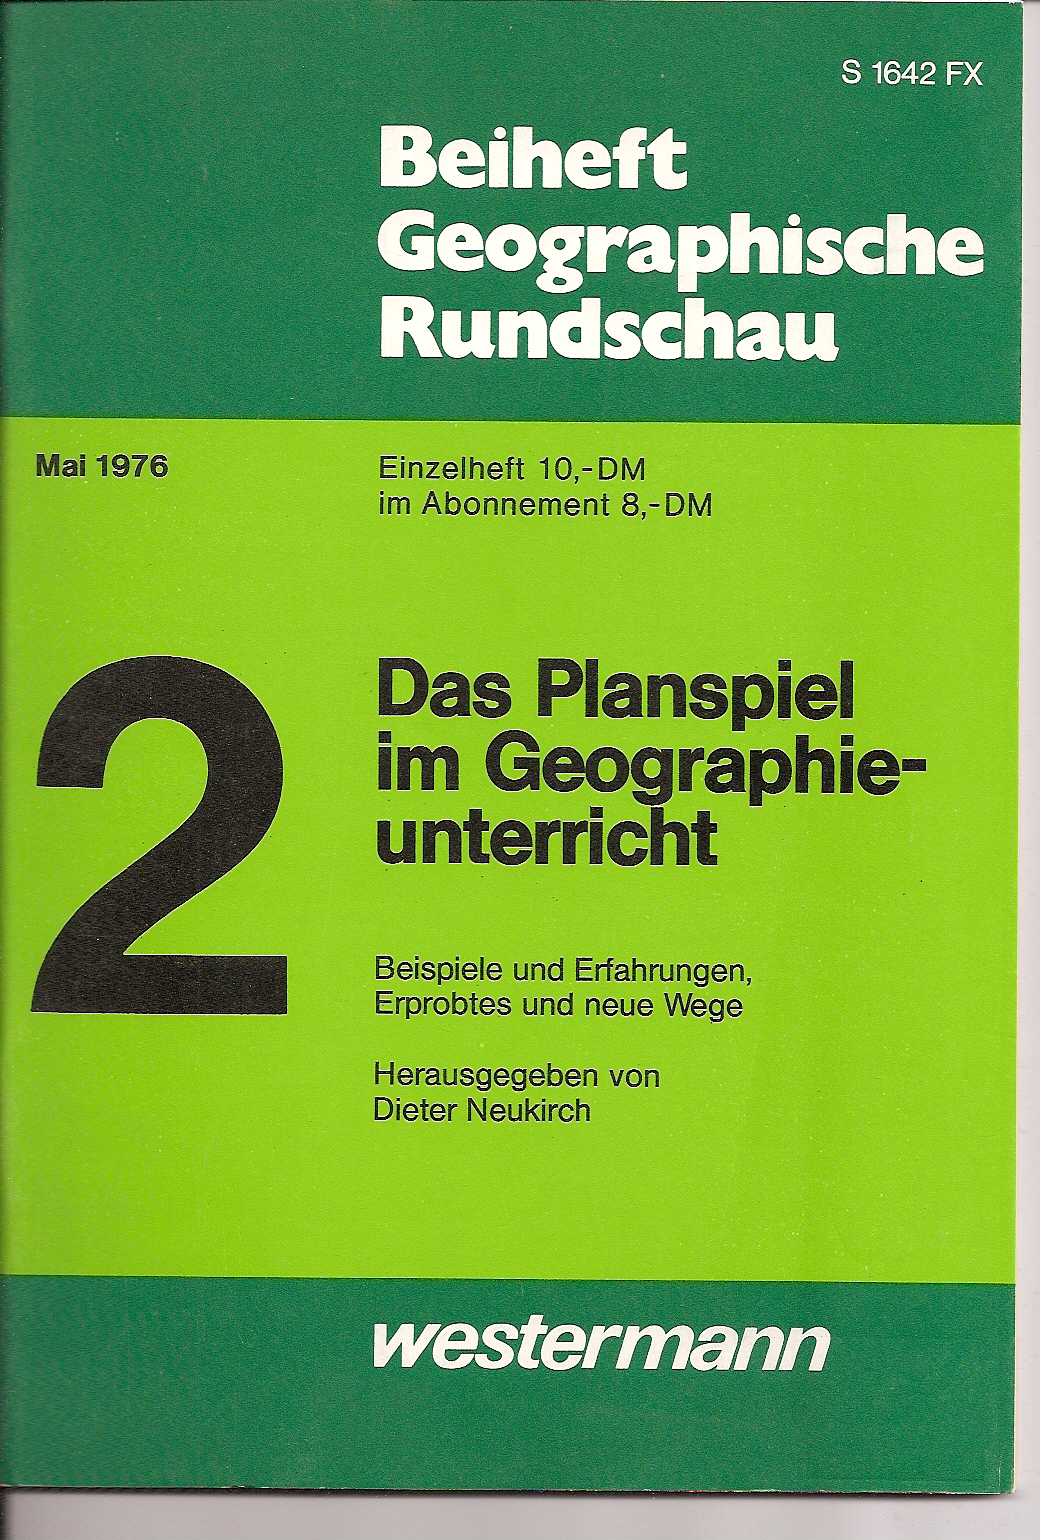 Beiheft Geographische Rundschau  Geographische Rundschau Mai 1976 